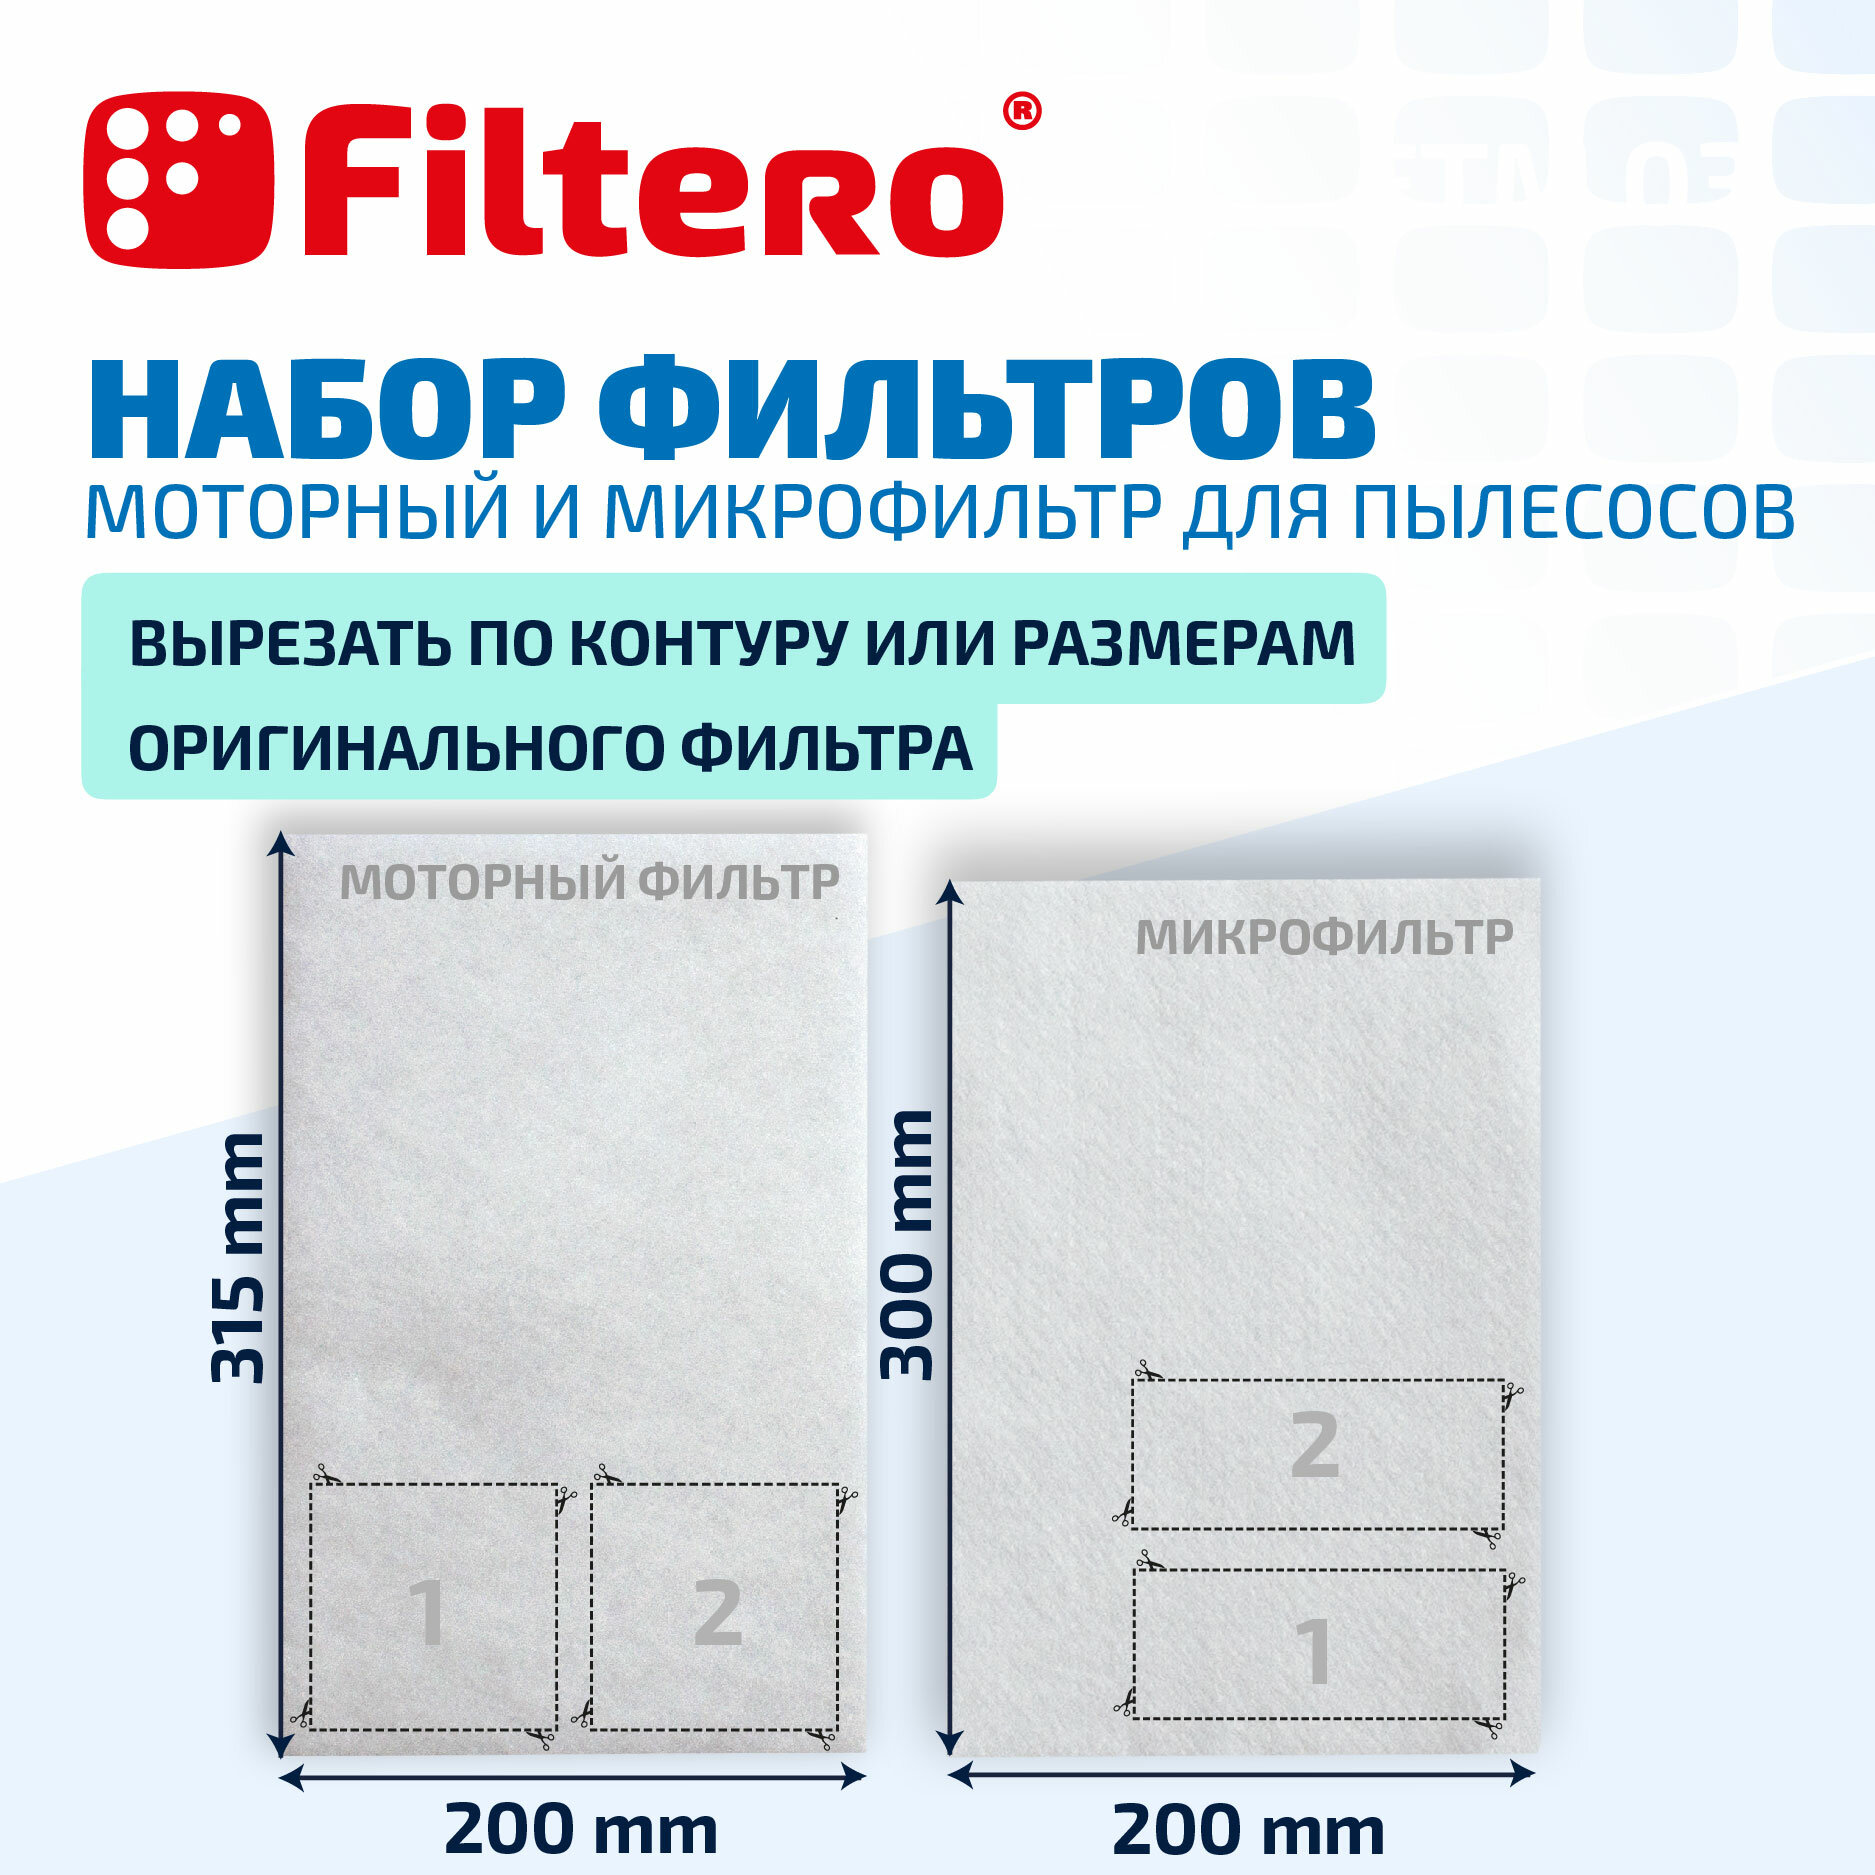 Filtero FTM 03 набор универсальных микро и моторного фильтров